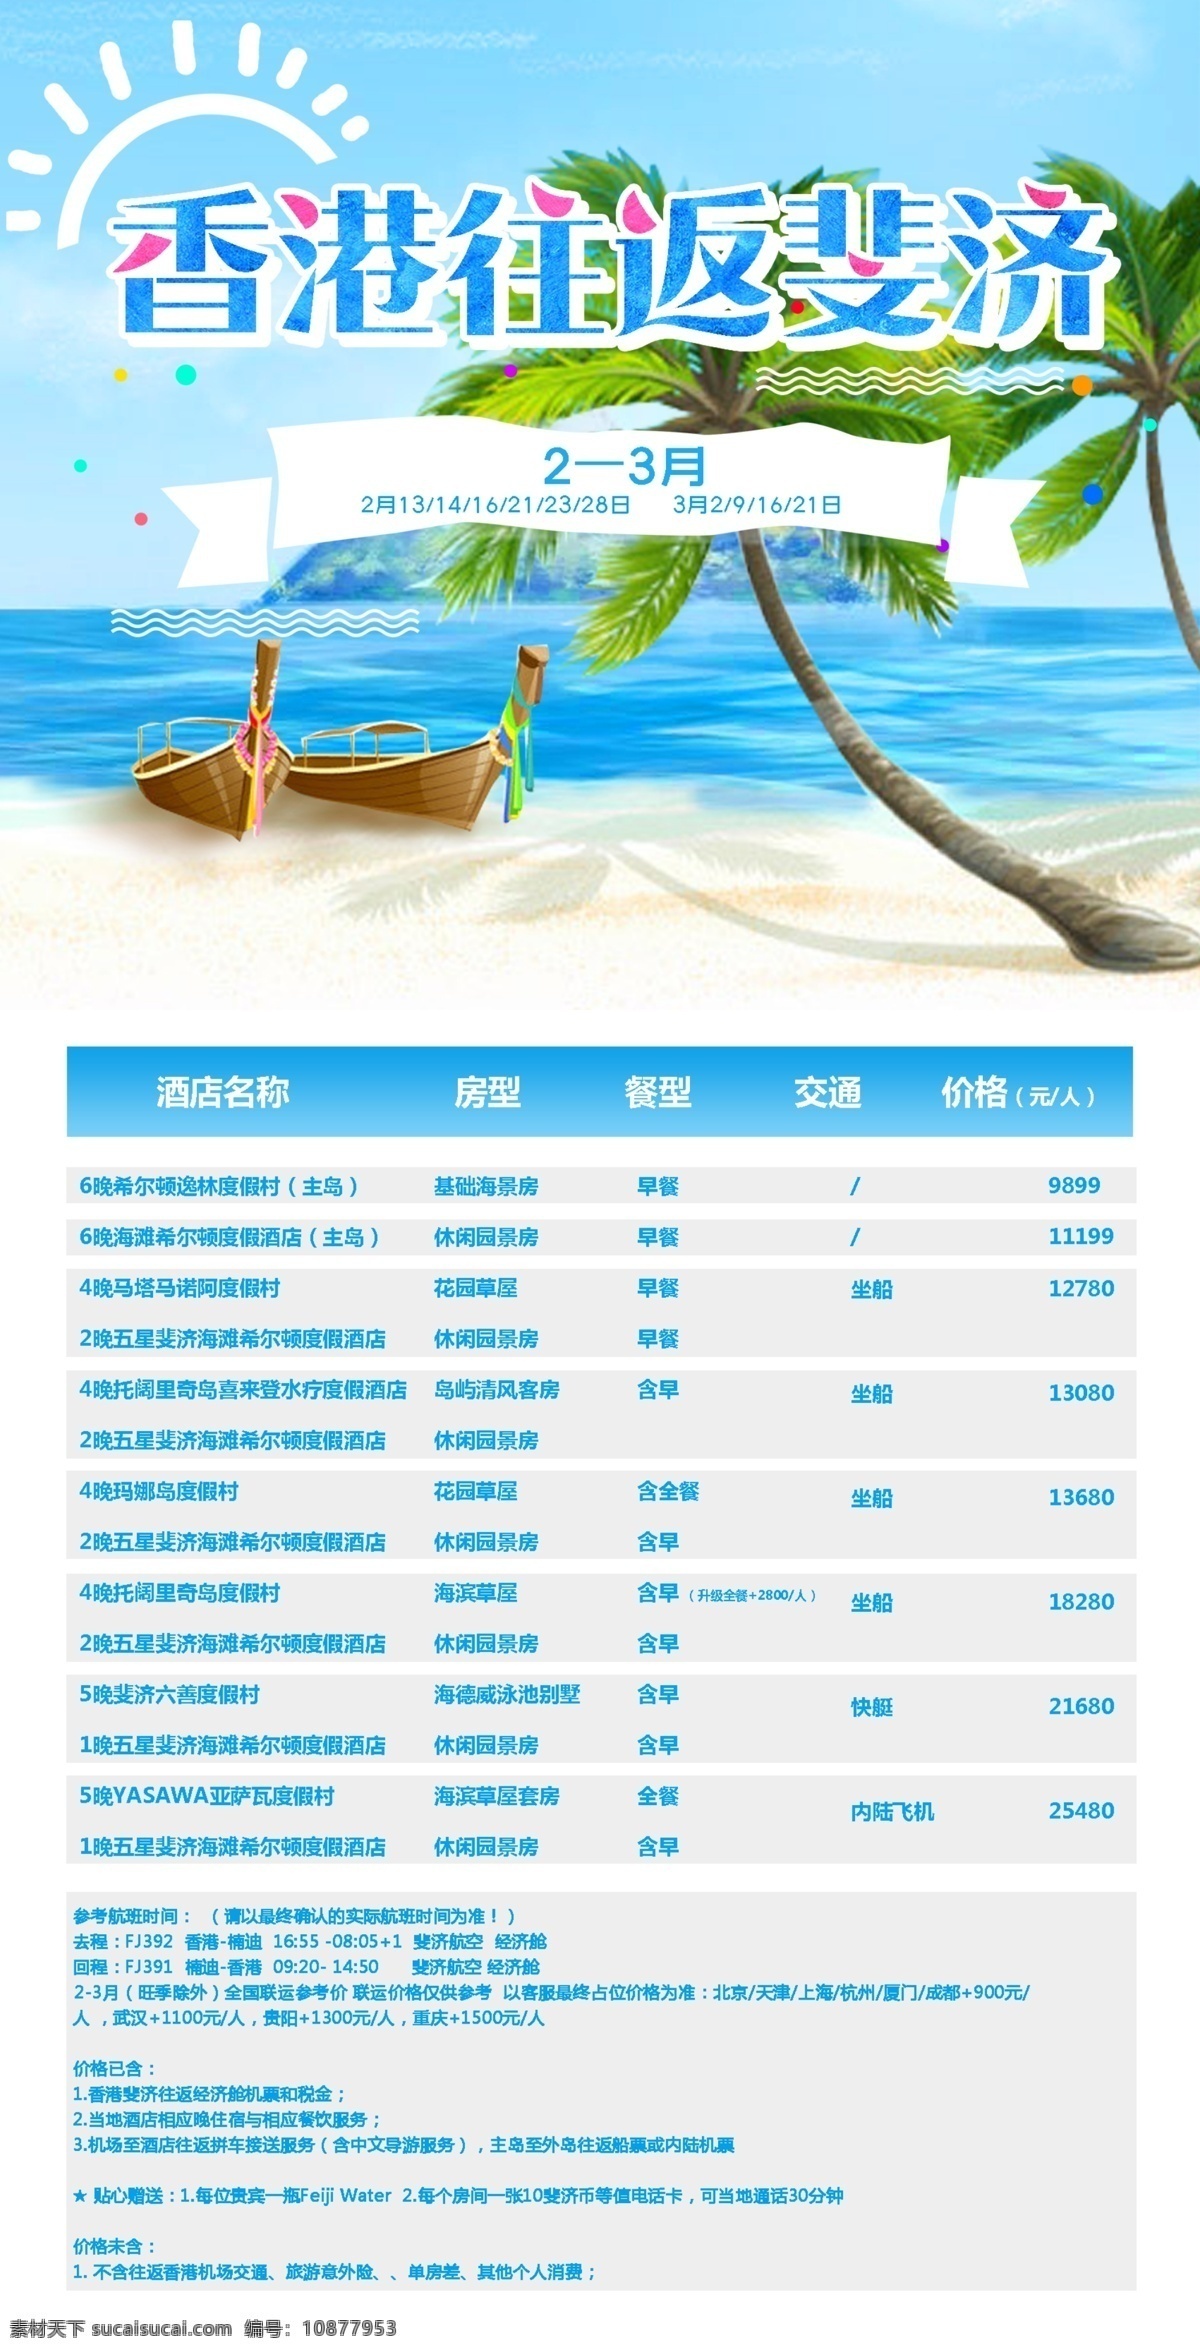 旅游团 宣传海报 旅游价格表 三亚海岛 假日风情 海报 椰树 香港 韩国 朋友圈长图 船